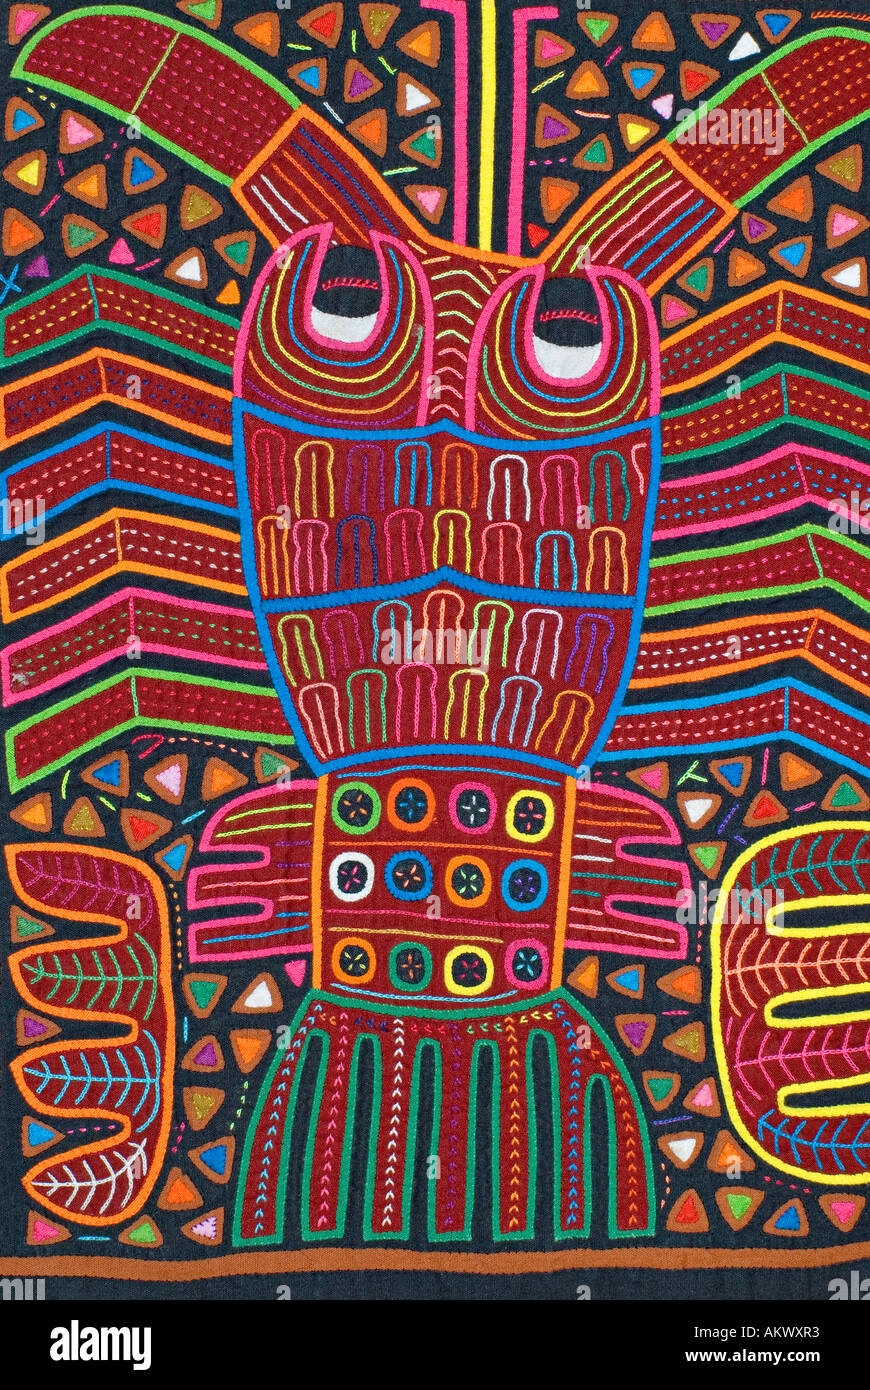 Appliqués ornamentales aplicado a blusas Molas de los indios Kuna las islas de San Blas, Panamá Langosta mariscos motif Foto de stock